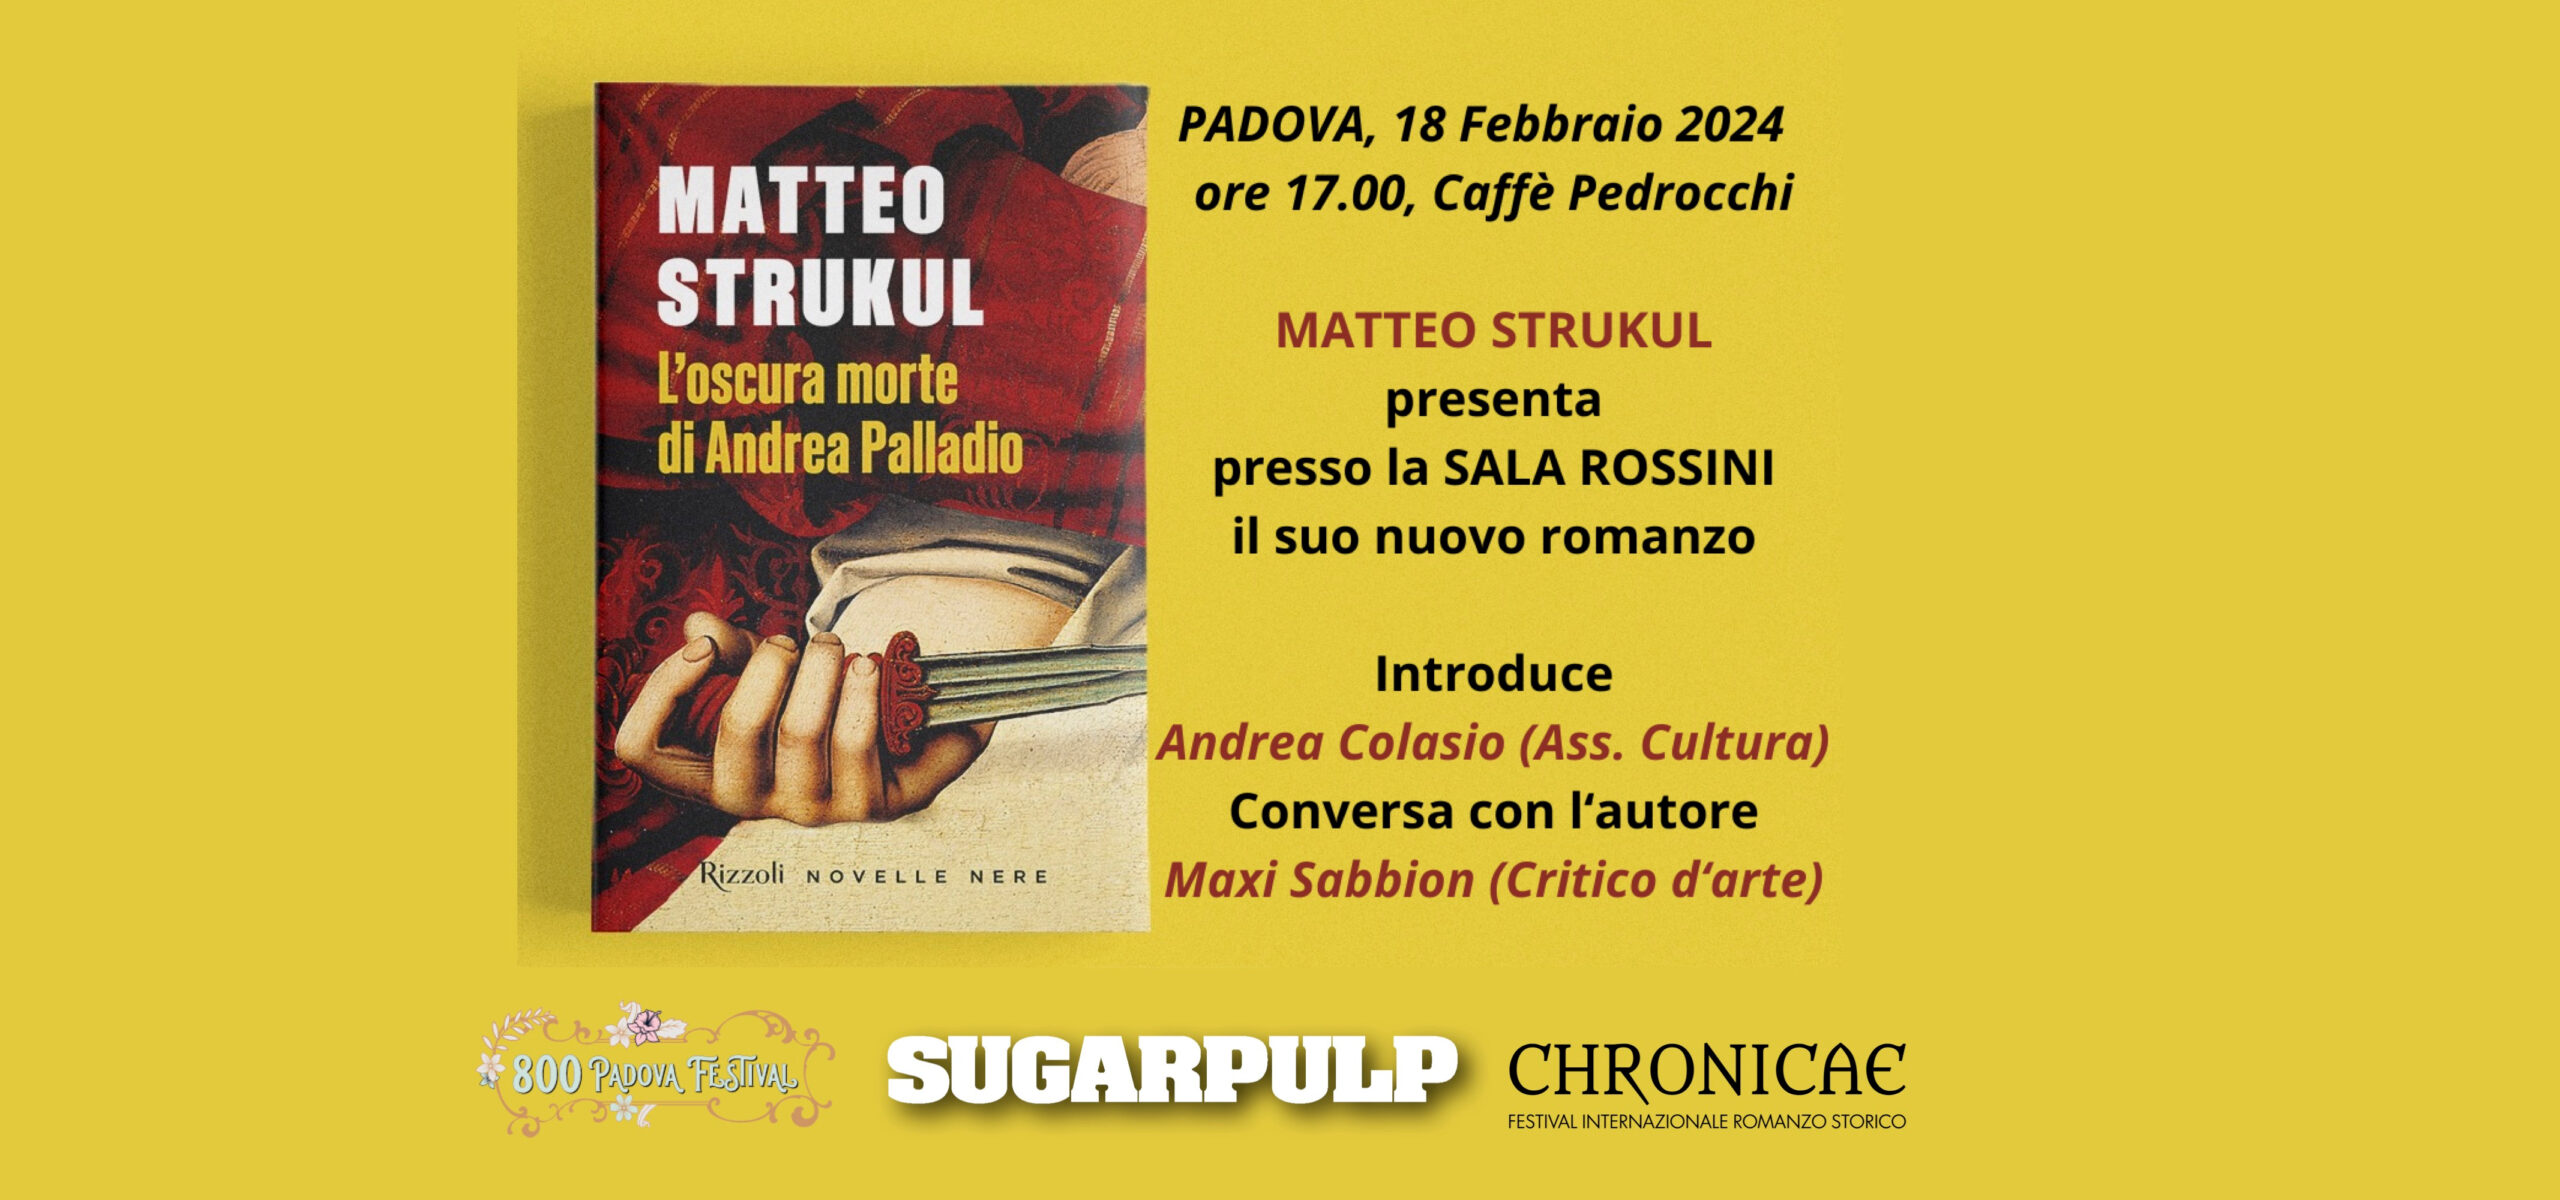 L'oscura morte di Andrea Palladio di Matteo Strukul, la presentazione al Caffè Pedrocchi domenica 18 febbraio alle 17:00 in Sala Rossini.